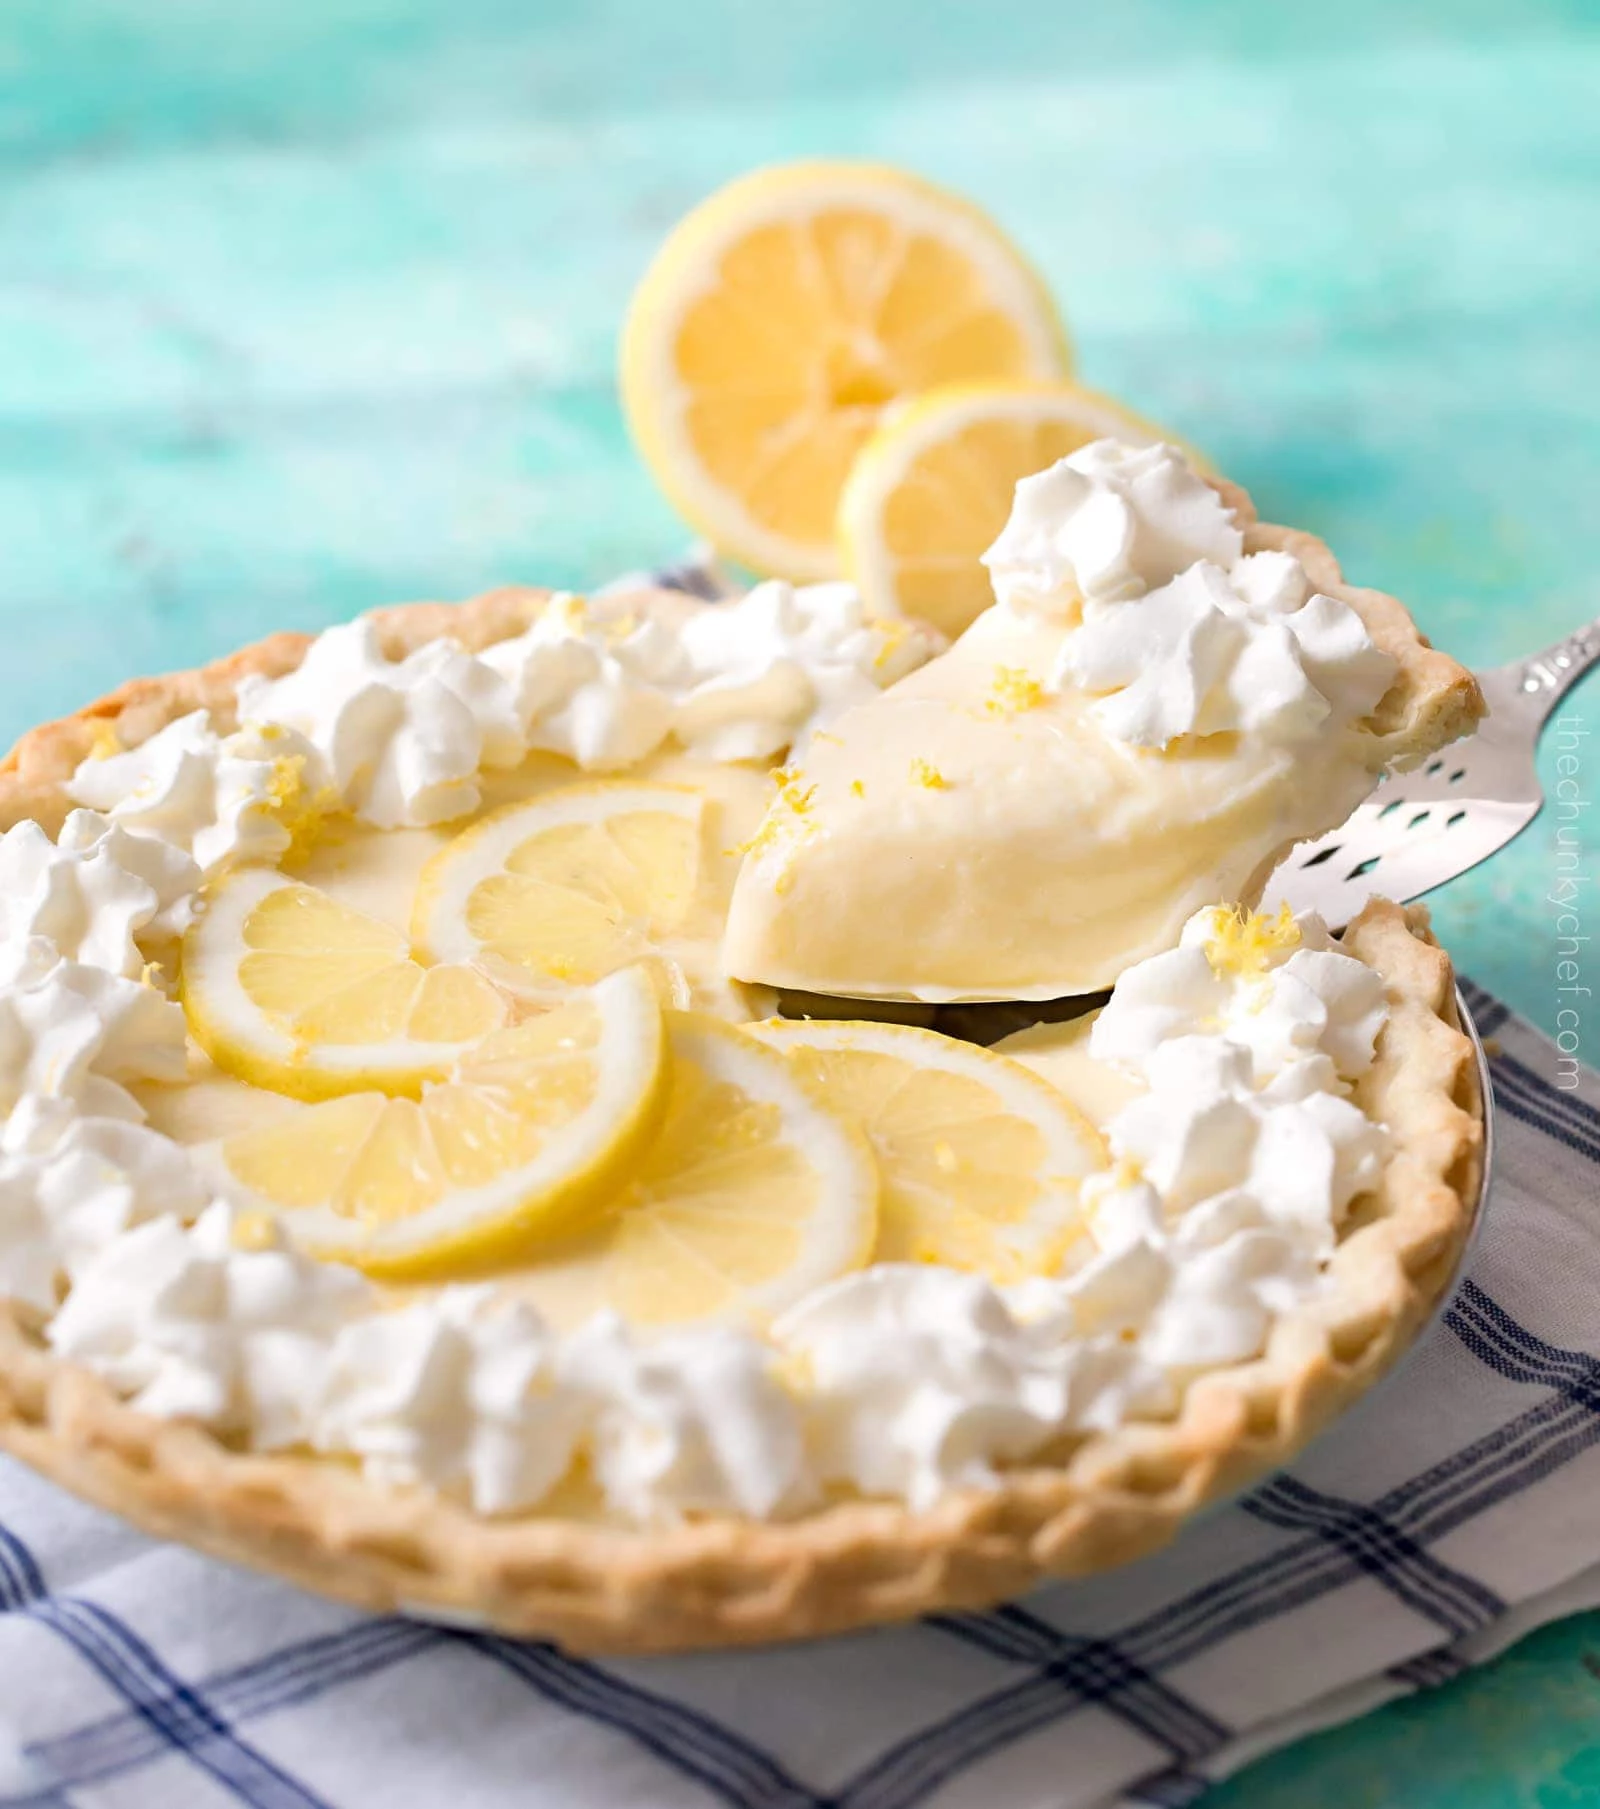 Practically Perfect Pies - Creamy Sour Cream Lemon Pie